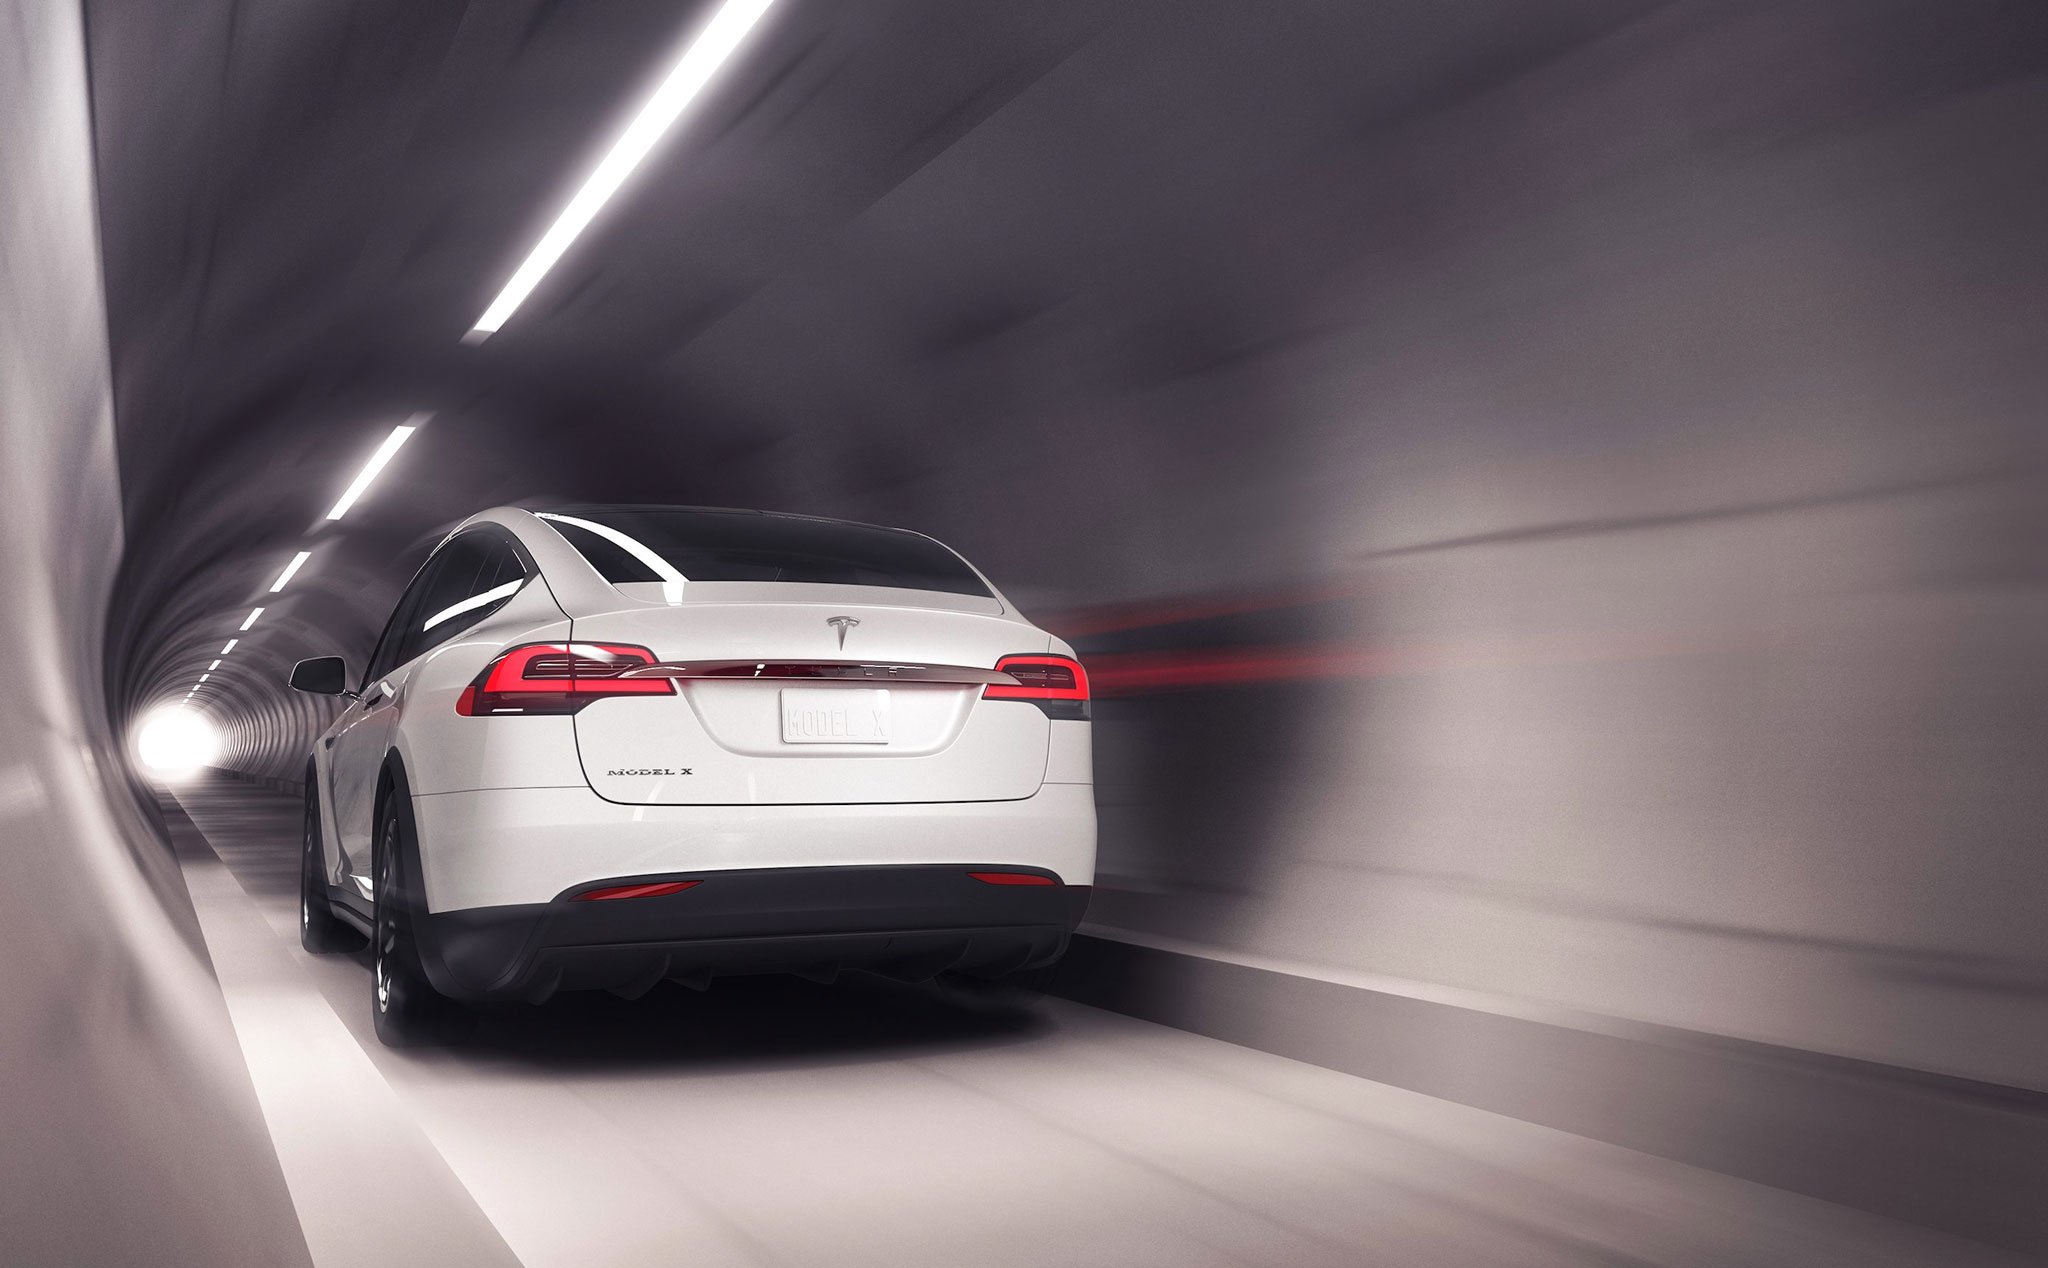 Cùng 1 đoạn đường, xe đi dưới ống ngầm của Elon Musk nhanh hơn 3 lần